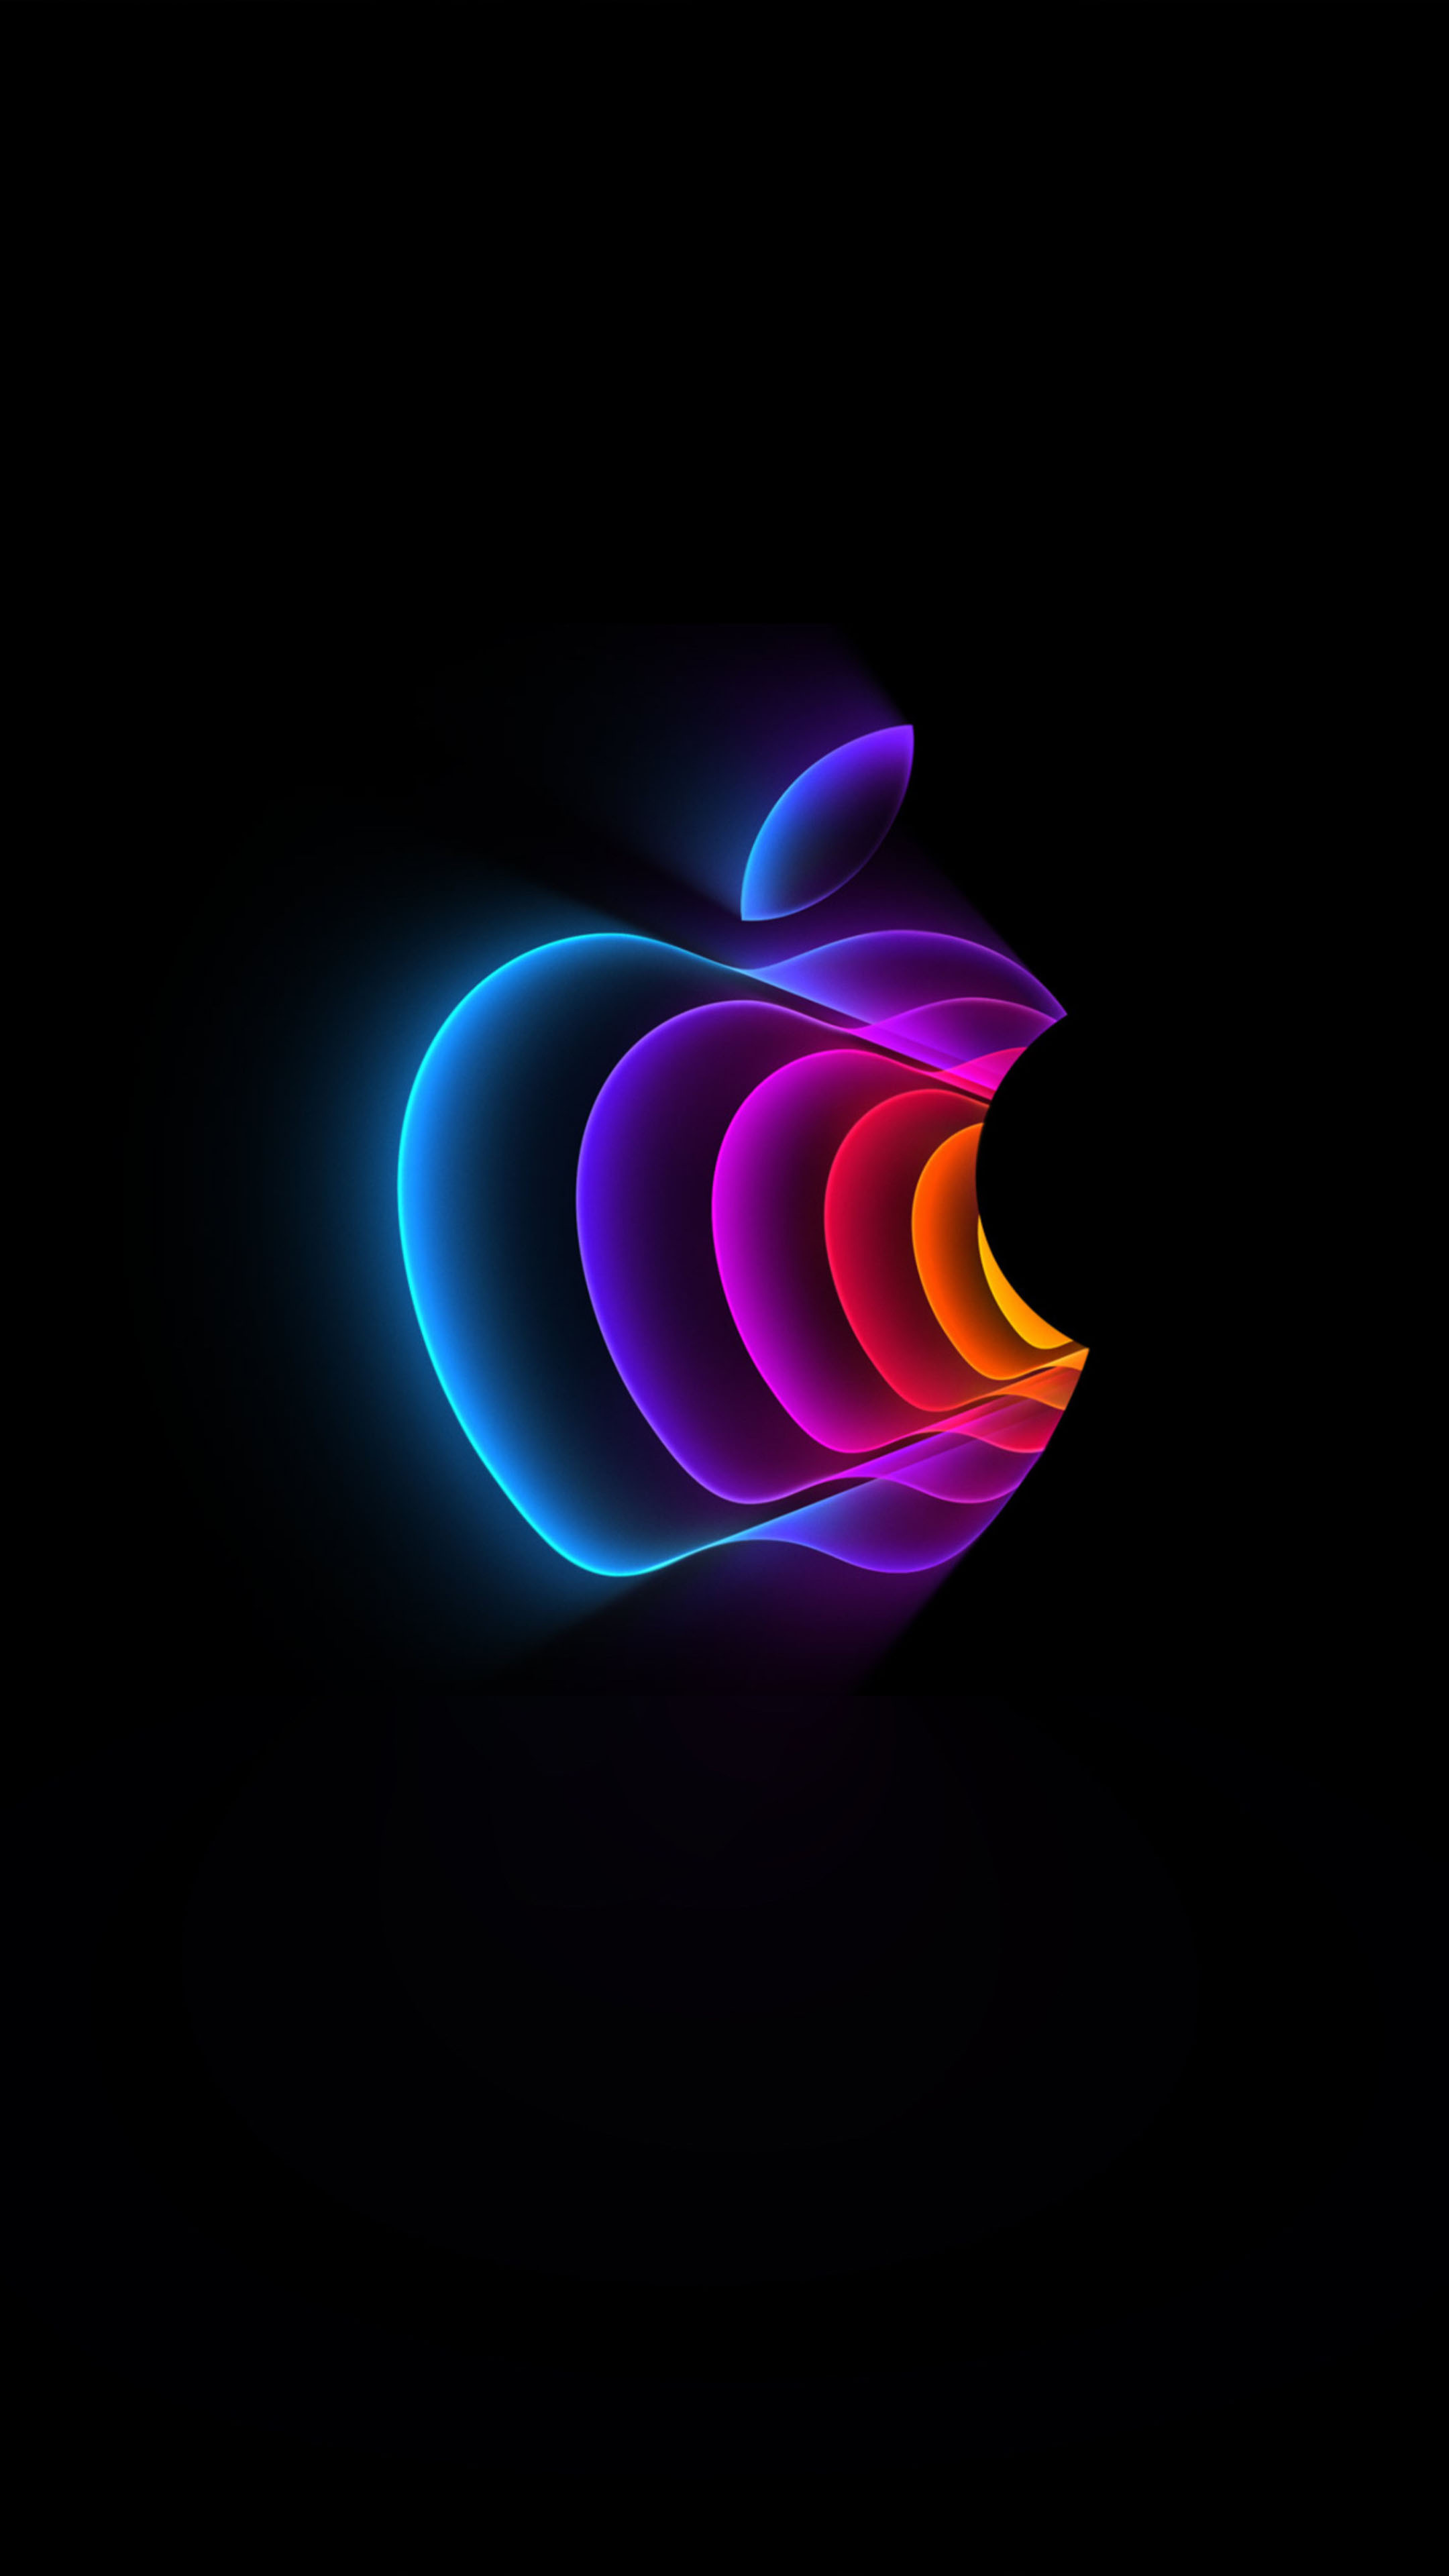 Logo táo của Apple là biểu tượng cho sự sáng tạo và sự tiên tiến. Thông qua nó, Apple đã truyền tải thông điệp của họ đến toàn thế giới về sự đổi mới và tính đột phá.